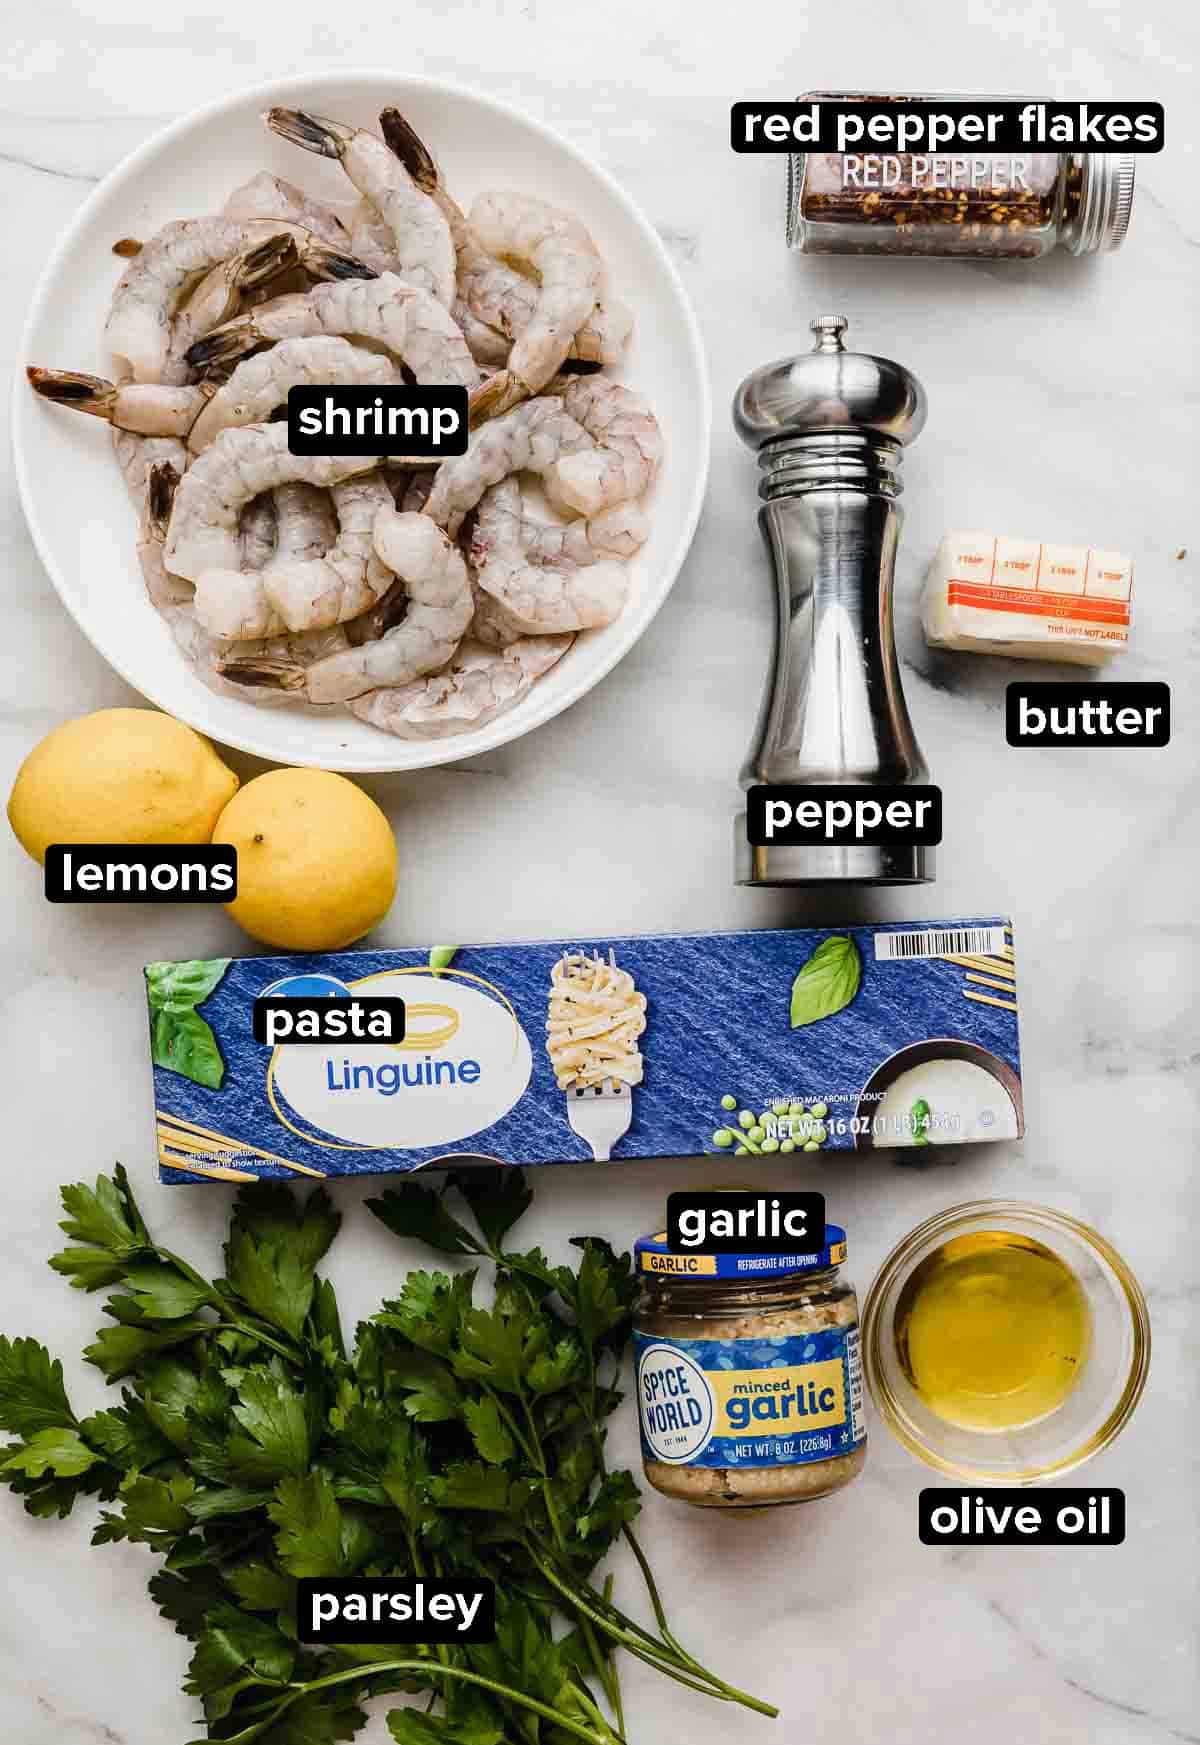 Shrimp Scampi with Linguine ingredients on a white background: parsley, shrimp, lemons, garlic, linguine noodles, butter, and pepper.